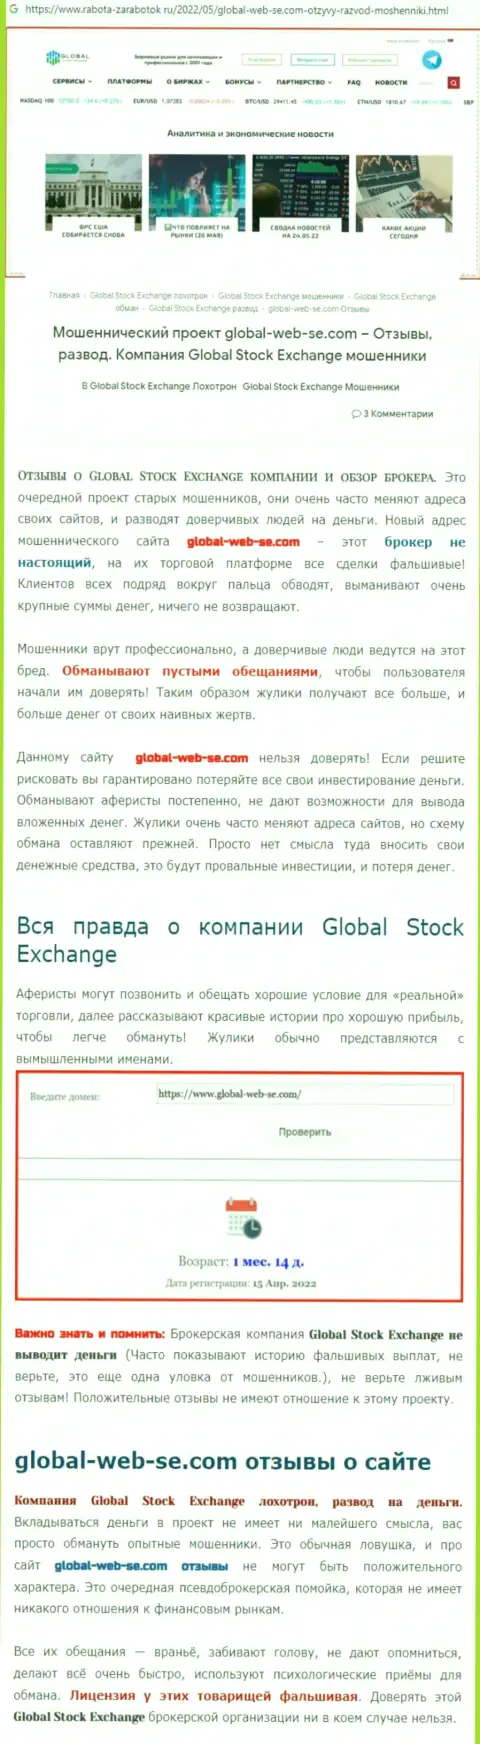 Автор обзора заявляет о шулерстве, которое происходит в организации Global Stock Exchange